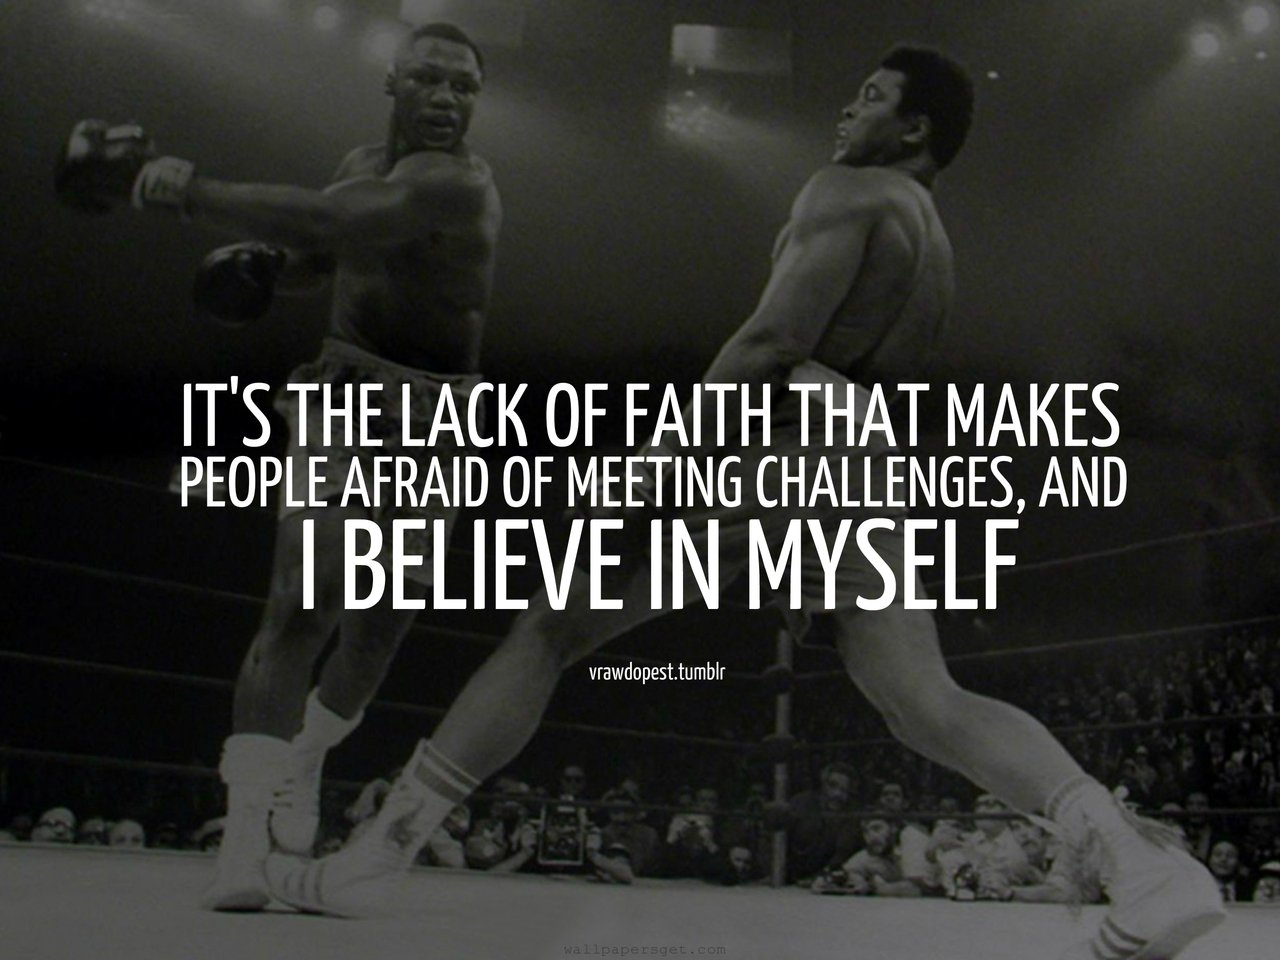 Muhammad Ali Quotes. QuotesGram